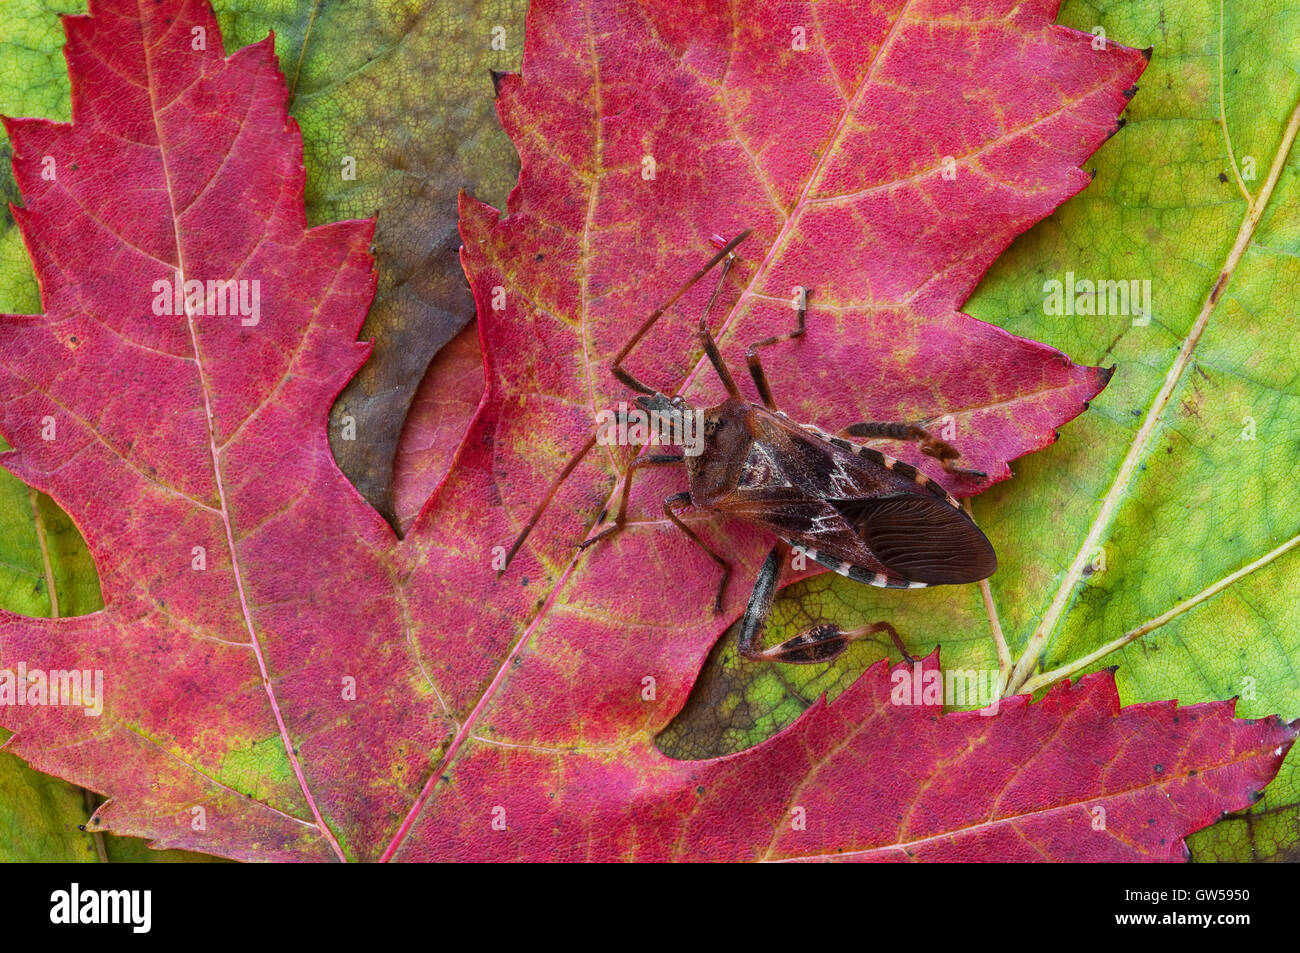 Insecte à pied de feuille, (Leptoglossus occidentalis) sur feuille d'érable argenté (Acer saccharinum), Etats-Unis, par Skip Moody/Dembinsky photo Assoc Banque D'Images